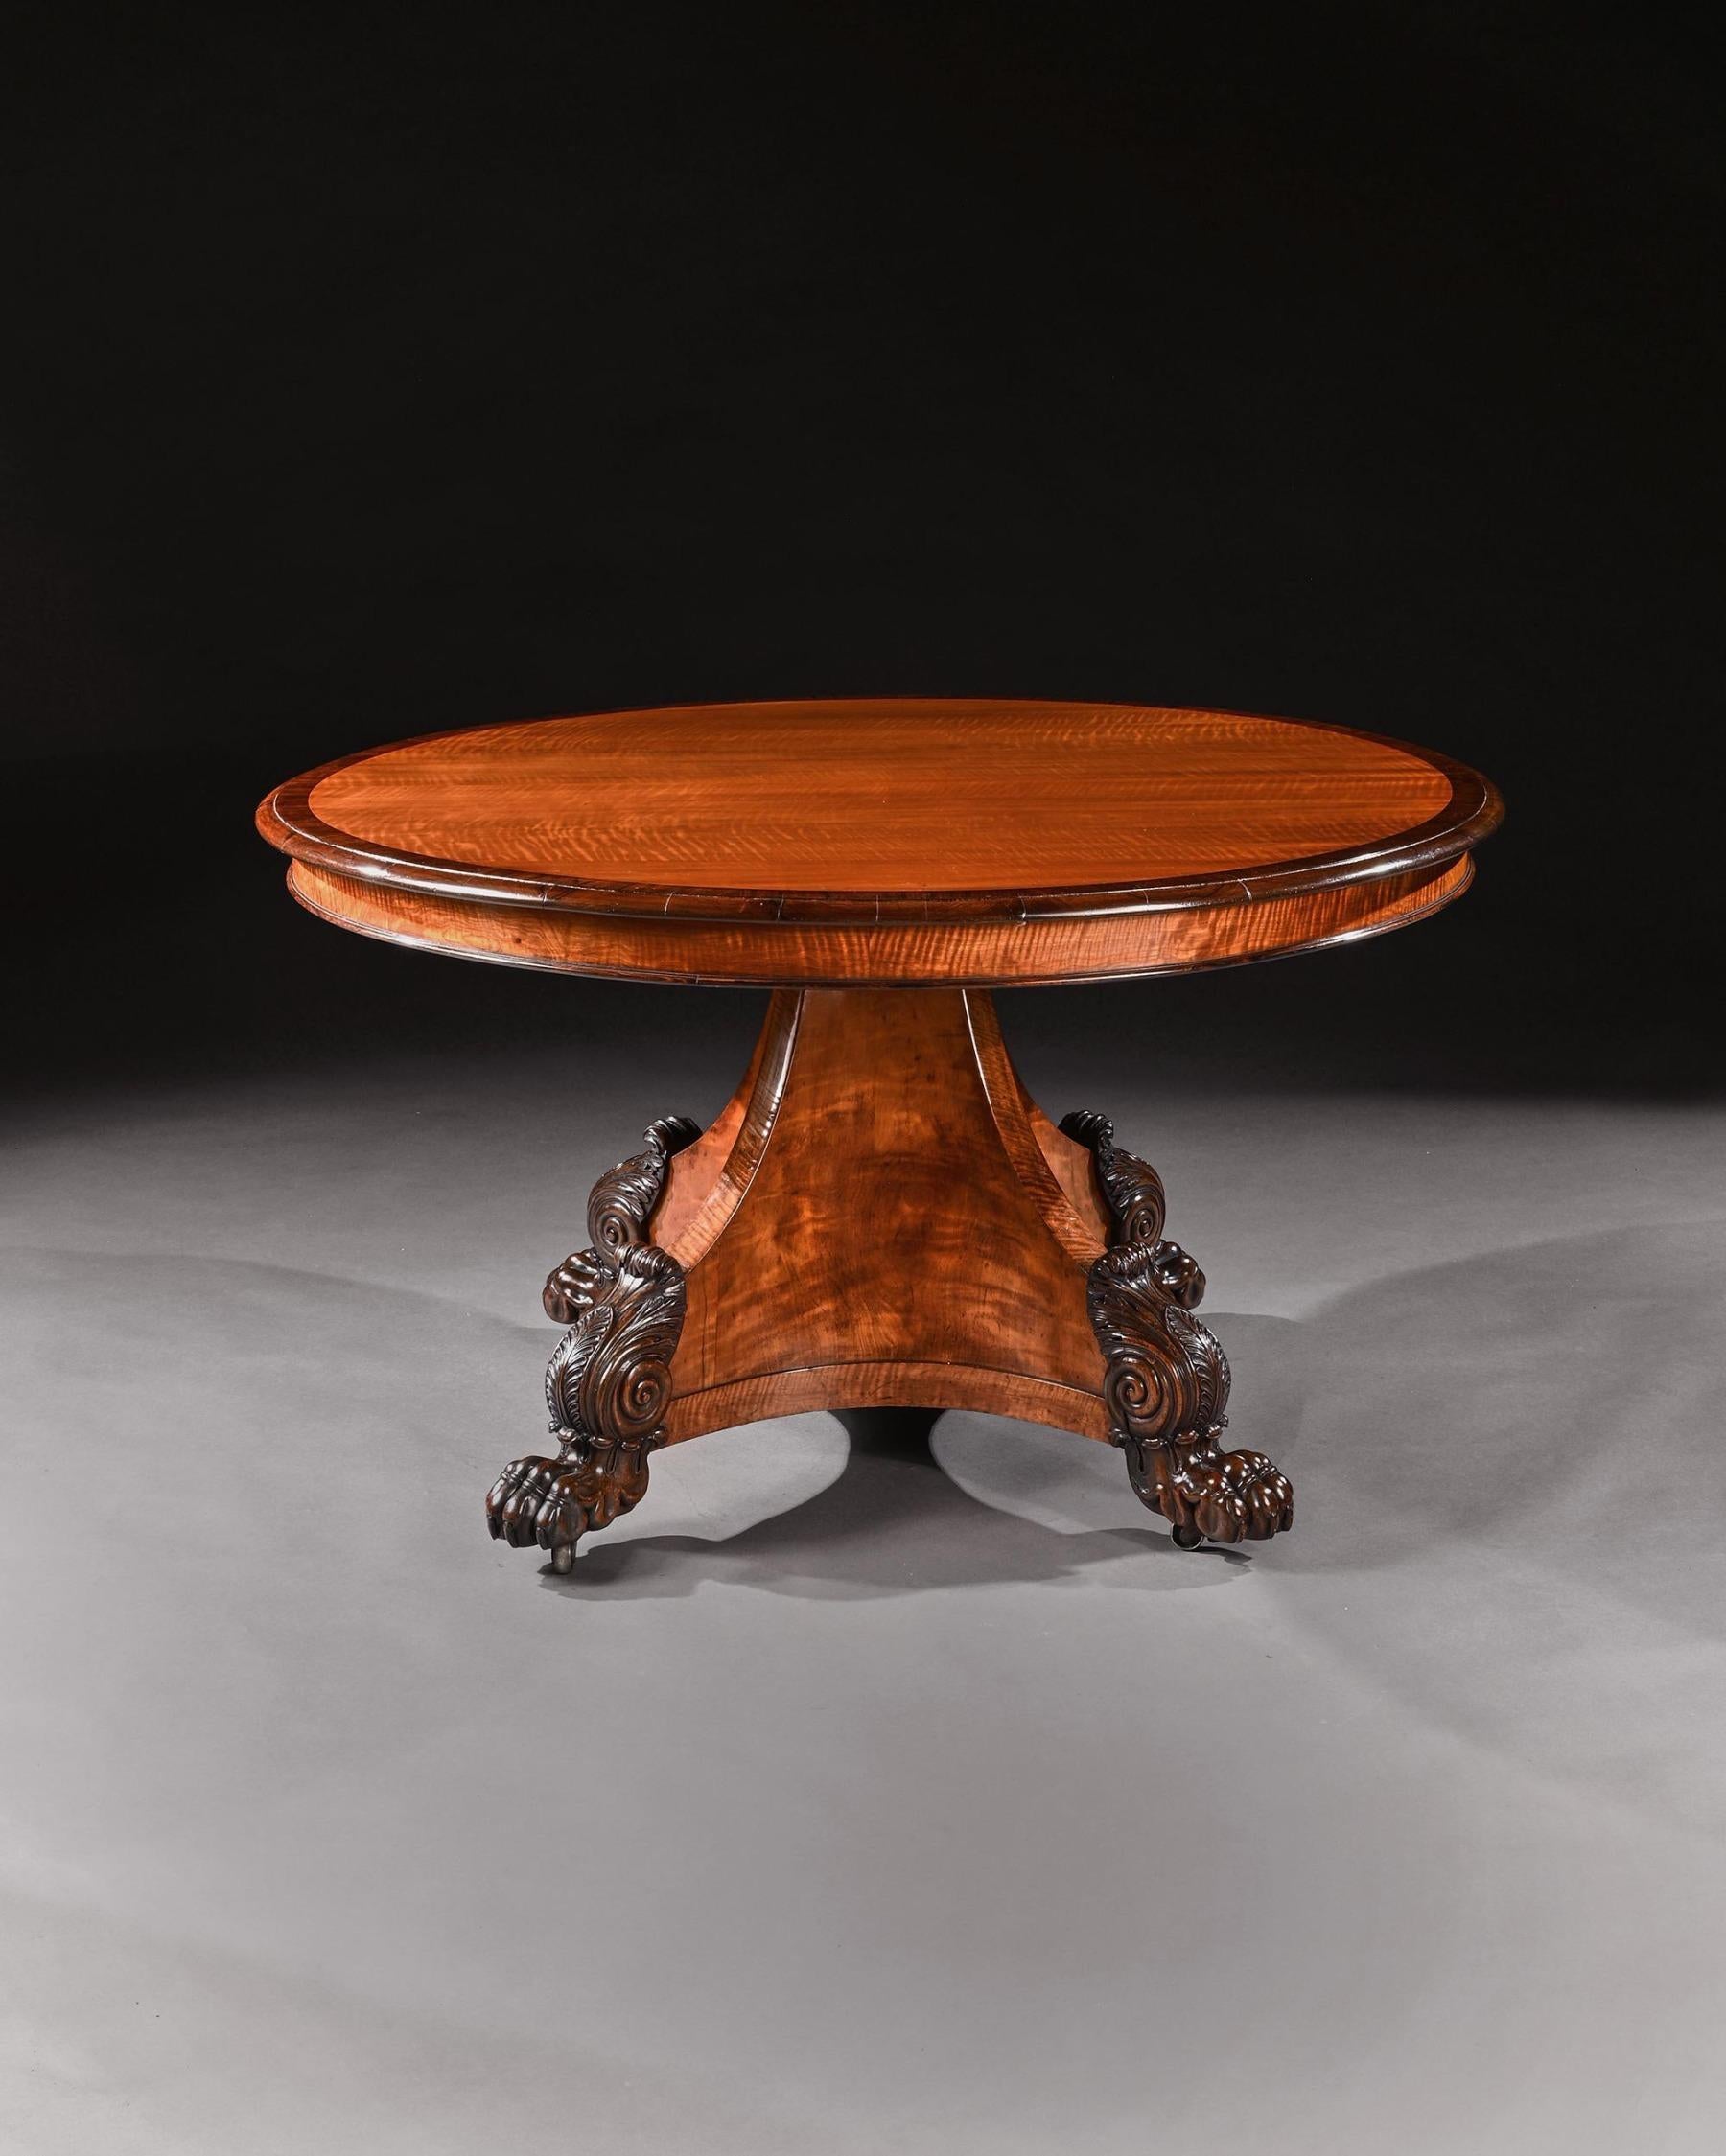 Ein seltener und fein konstruierter runder Tisch aus satiniertem Holz, wahrscheinlich von Henry Thomas Peters aus Genua.

Italien, um 1830.

Die kreisförmige Kippplatte mit einem fein ausgewählten Zuschnitt aus Westindischem Satinholzfurnier mit